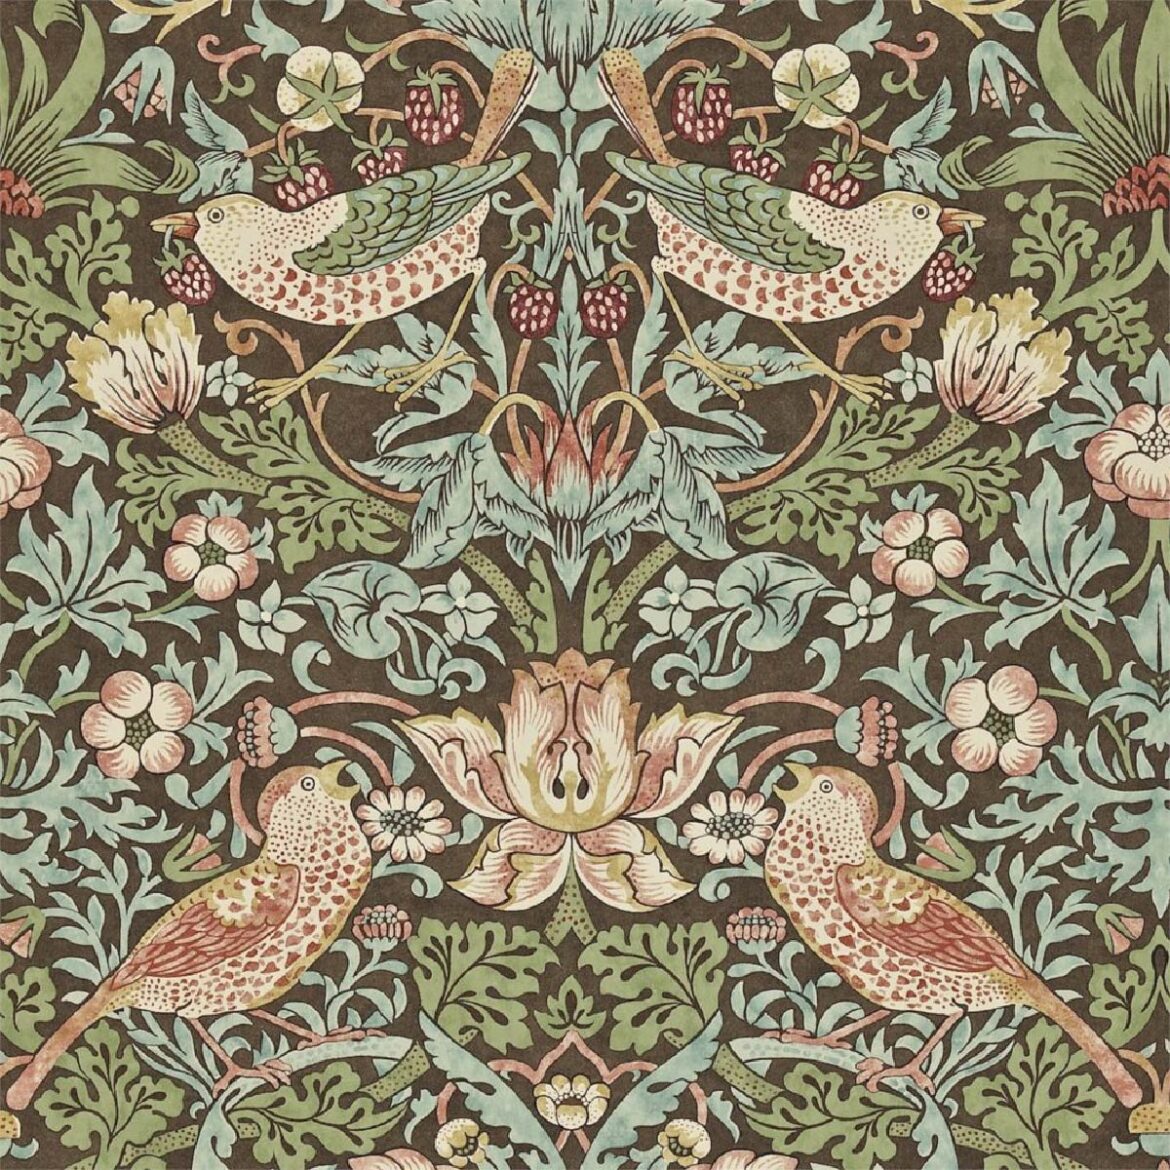 【無料壁紙】ウィリアム・モリス「いちご泥棒 (1883)」 / William Morris_Strawberry Thief pattern (1883)